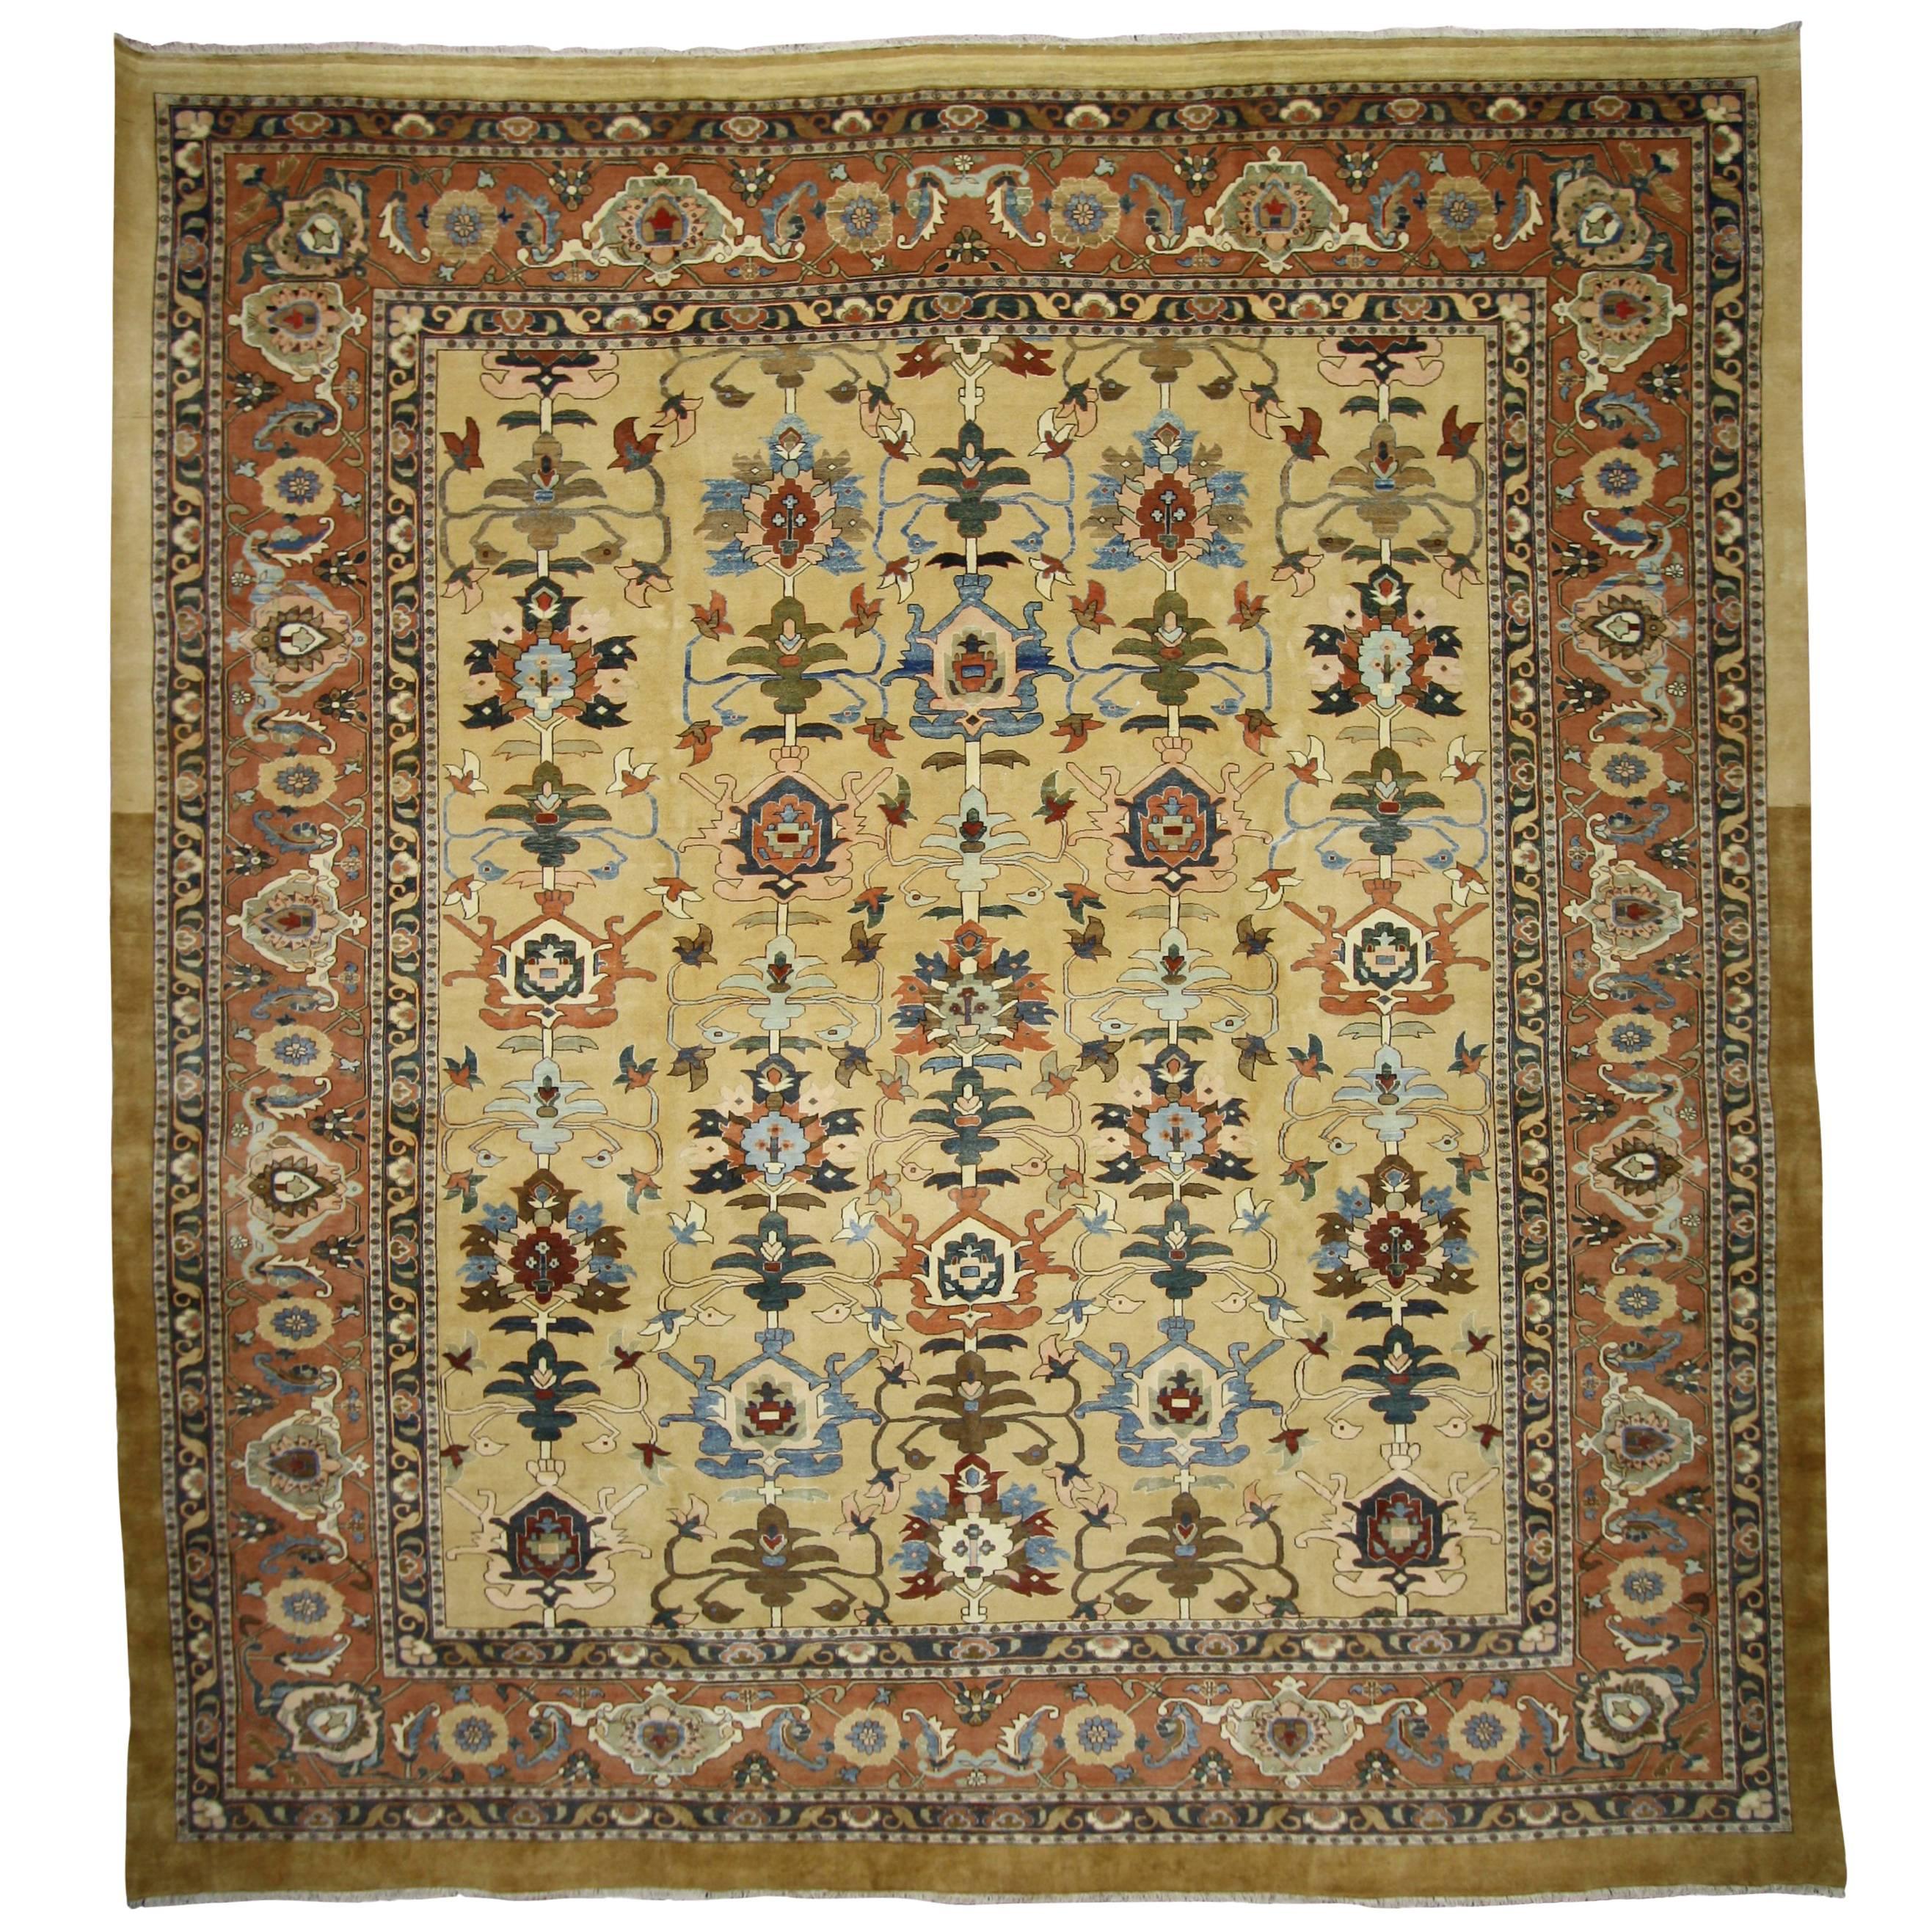 Persischer Sultanabad-Teppich in Palastgröße mit warmem toskanischem italienischem Stil